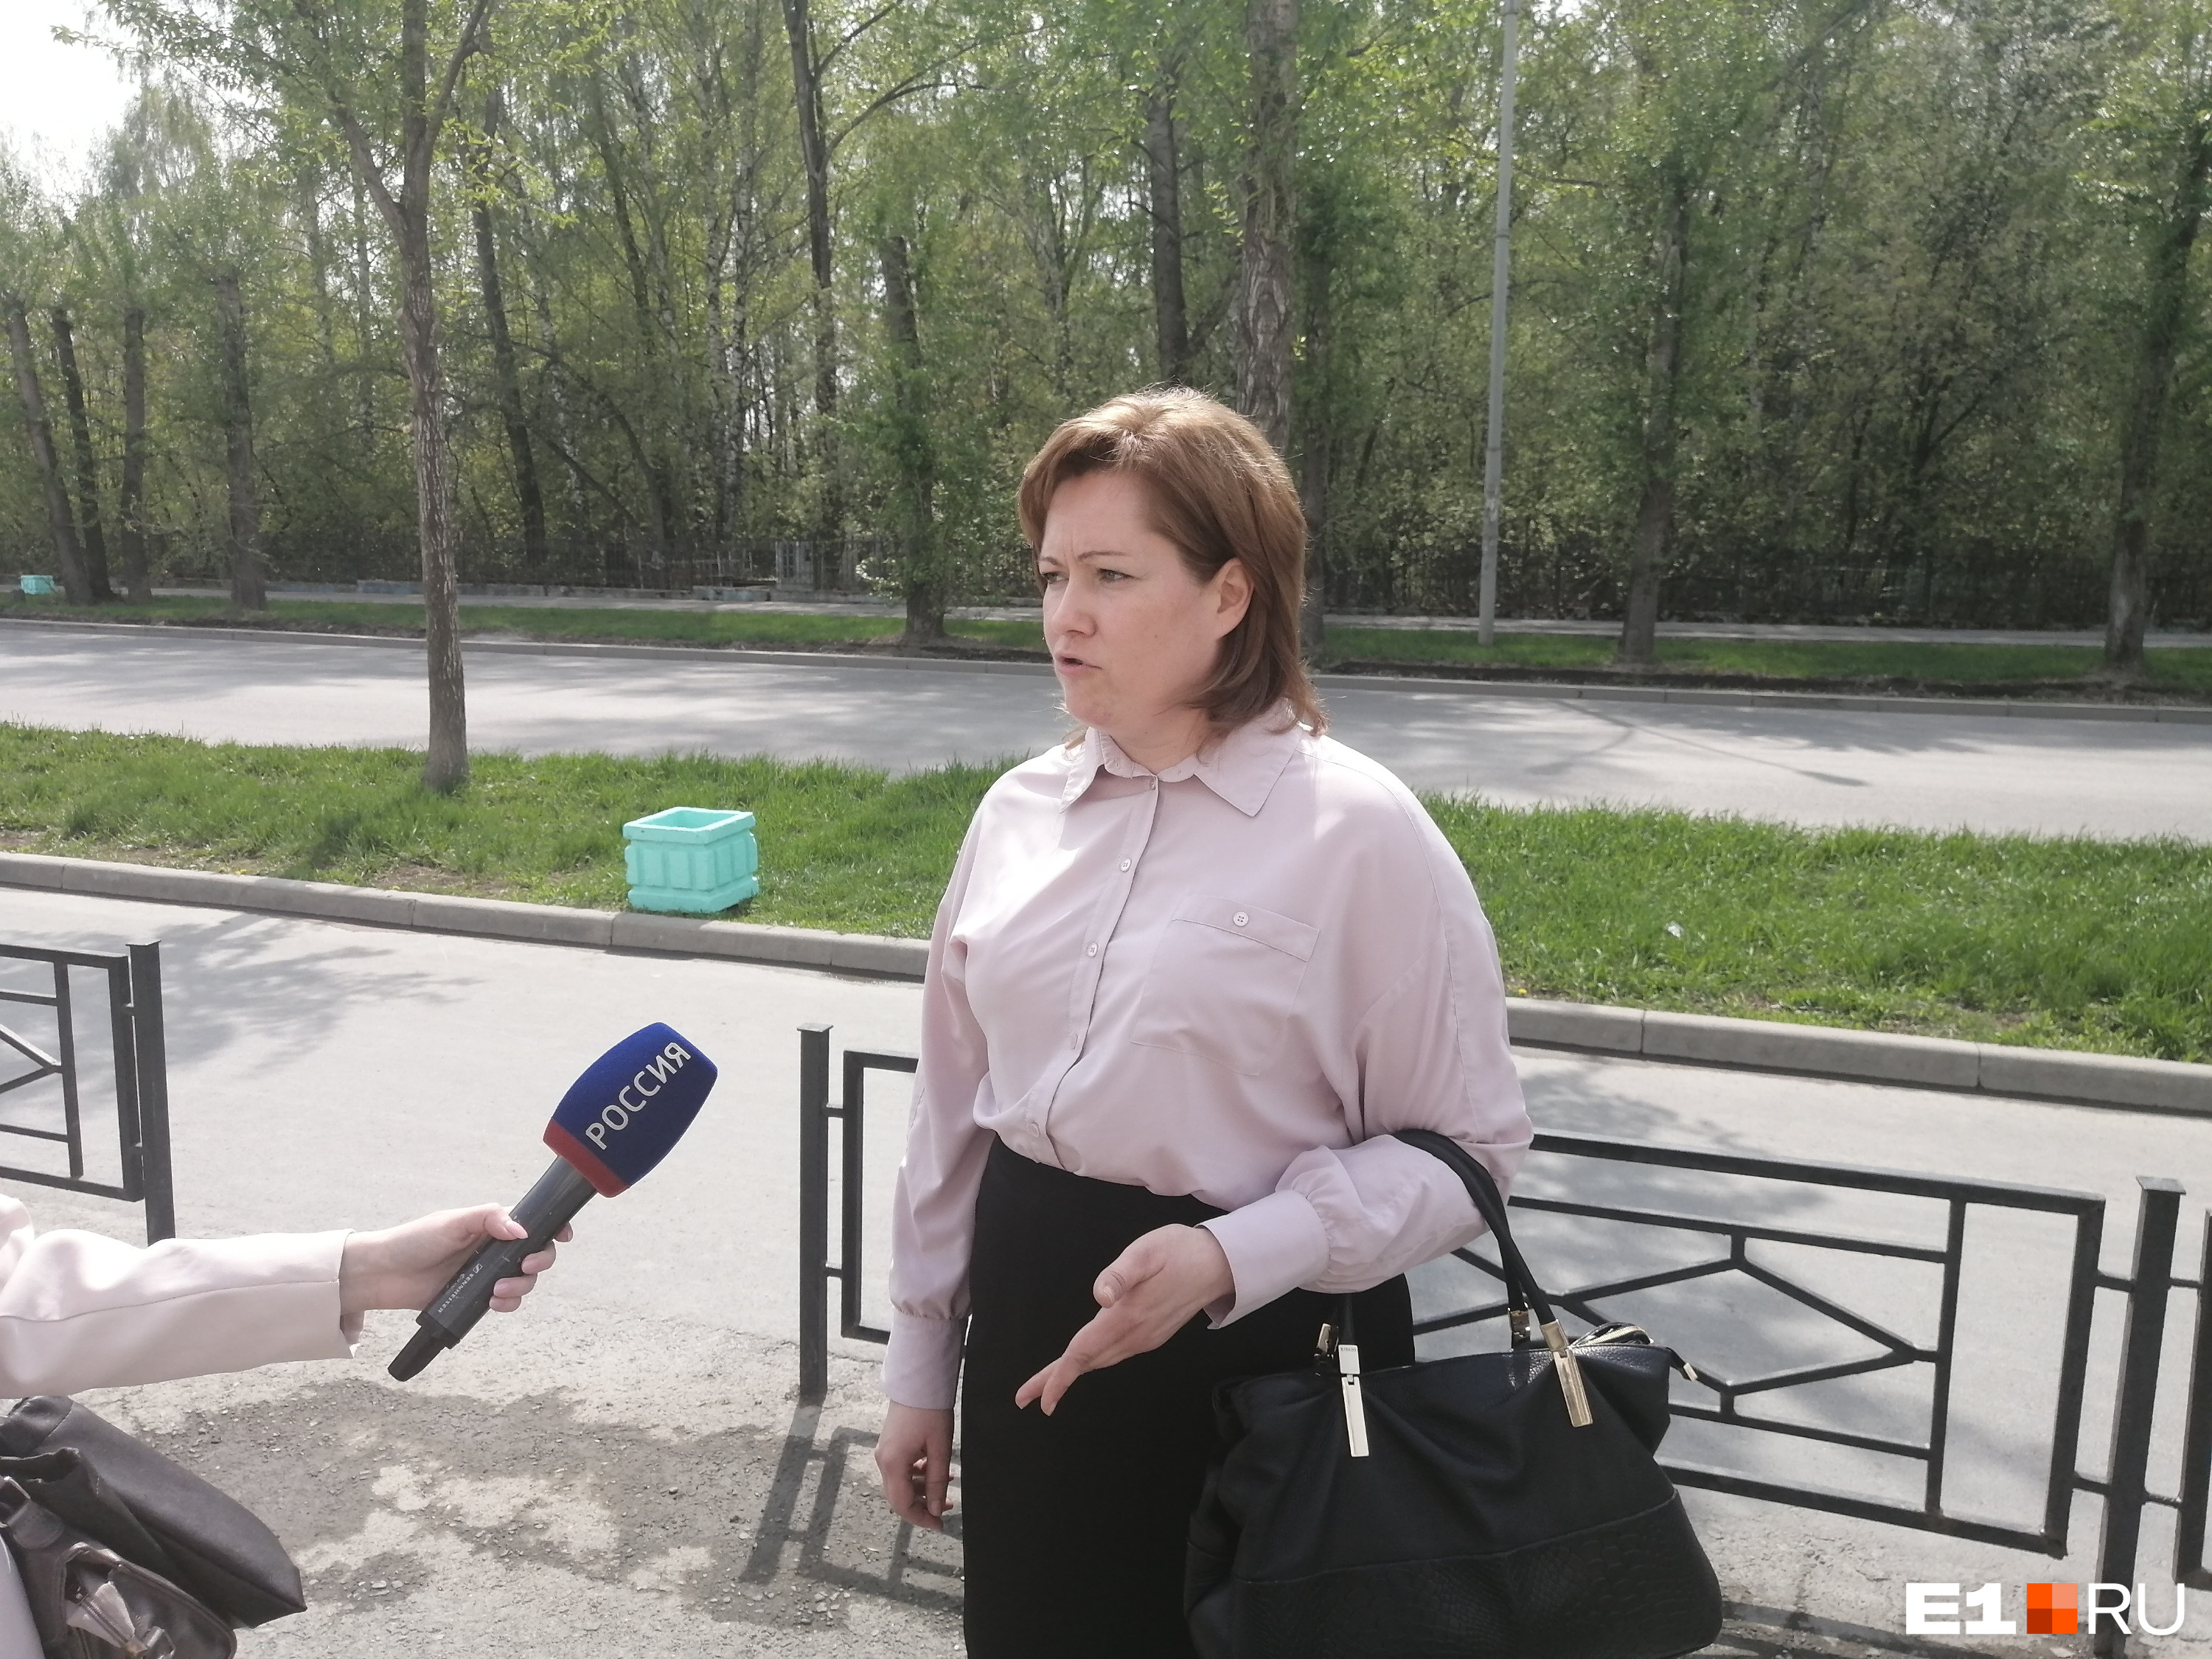 Адвокат Оксана Зиновьева рассказала, что за время расследования ими было подано более 500 жалоб